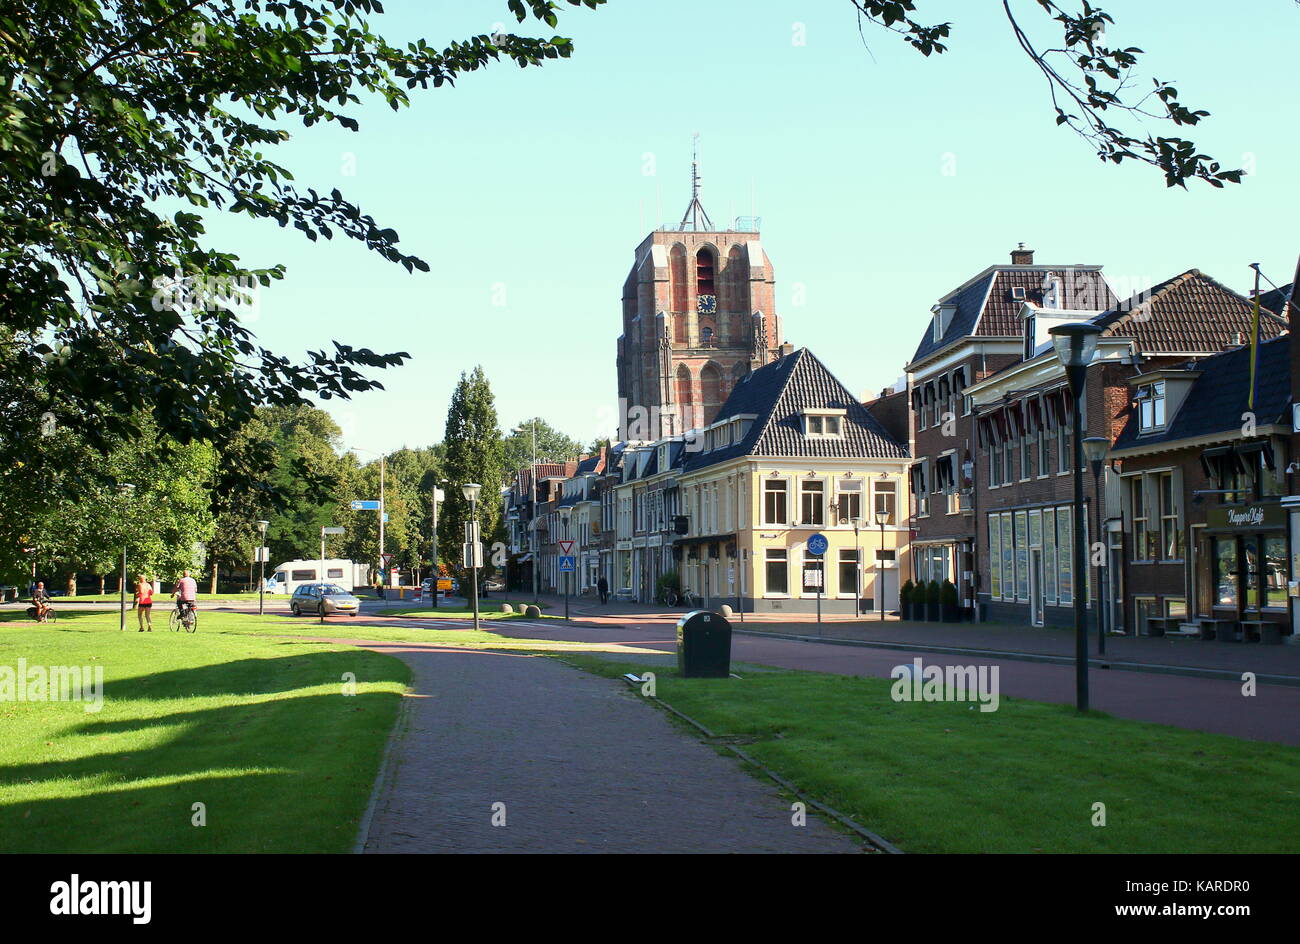 L'horizon historique de Leeuwarden avec Oldehove Tower dans le vieux centre médiéval de Leeuwarden, Frise, Pays-Bas, vu de la rue Westerplantage Banque D'Images